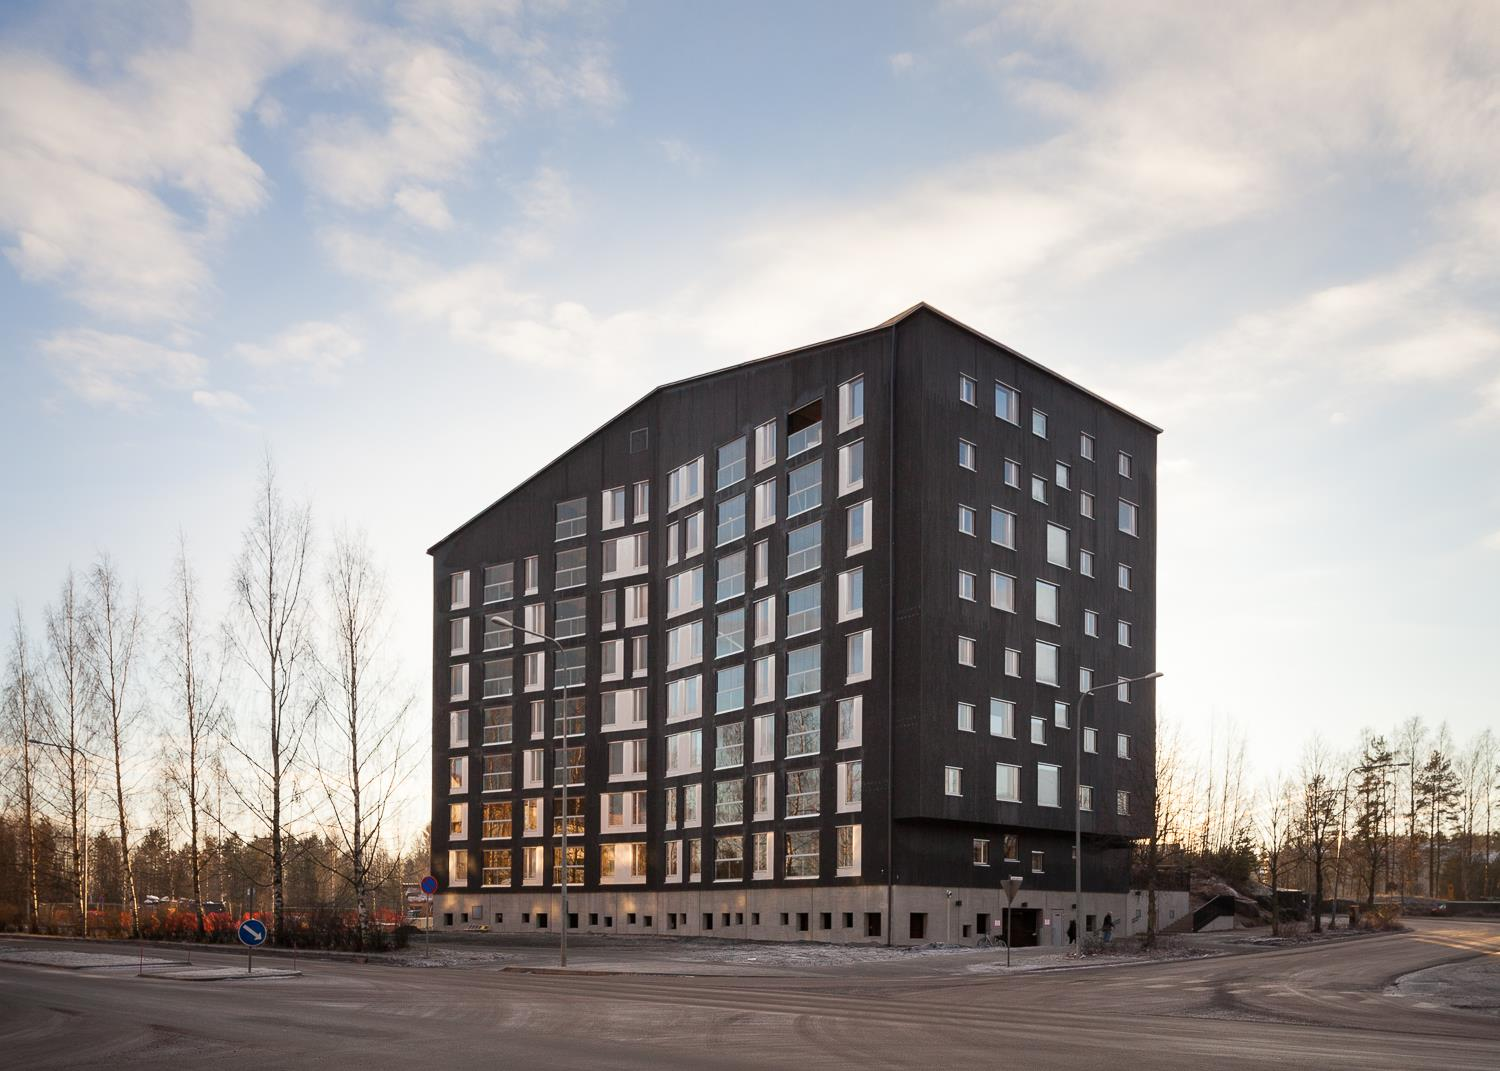 24 Suomen korkein puukerrostalo sijaitsee Jyväskylässä Kuokkalan kaupunginosassa. Puukuokka (kuva 15) on kahdeksankerroksinen rakennus, jonka rakenteena on CLT-levyistä valmistetut tilaelementit.